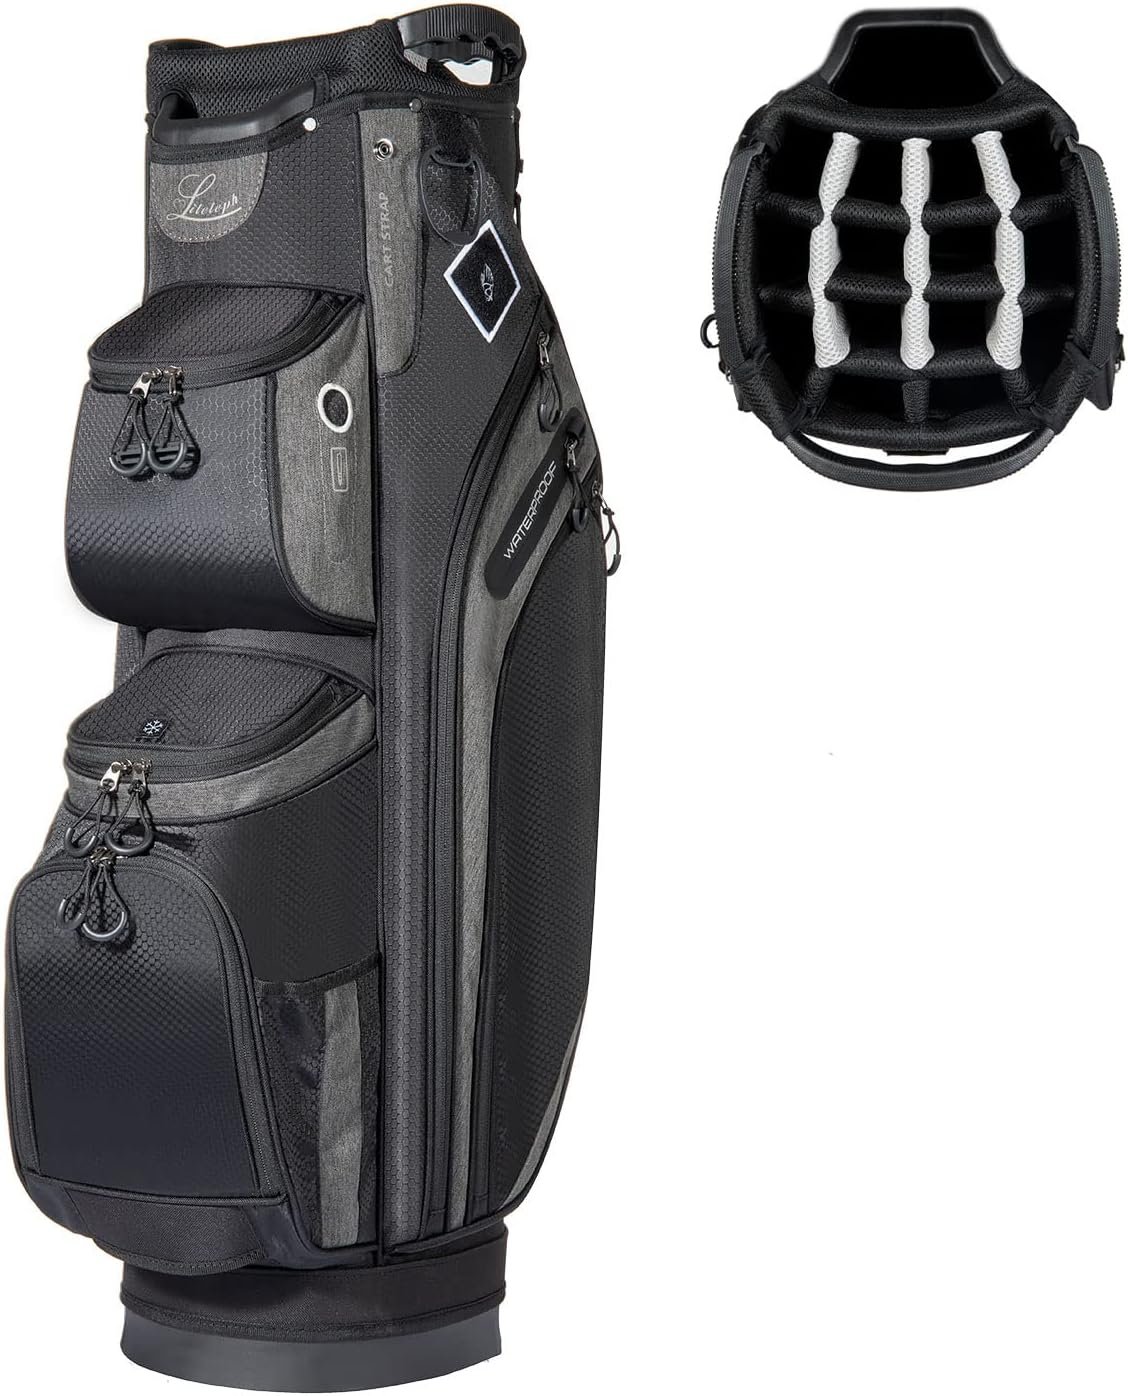 LITELEPH Golf Bags for Men Women Lightweight Cart Bag 14 Way Organizer Divider Top Full Length with Cooler